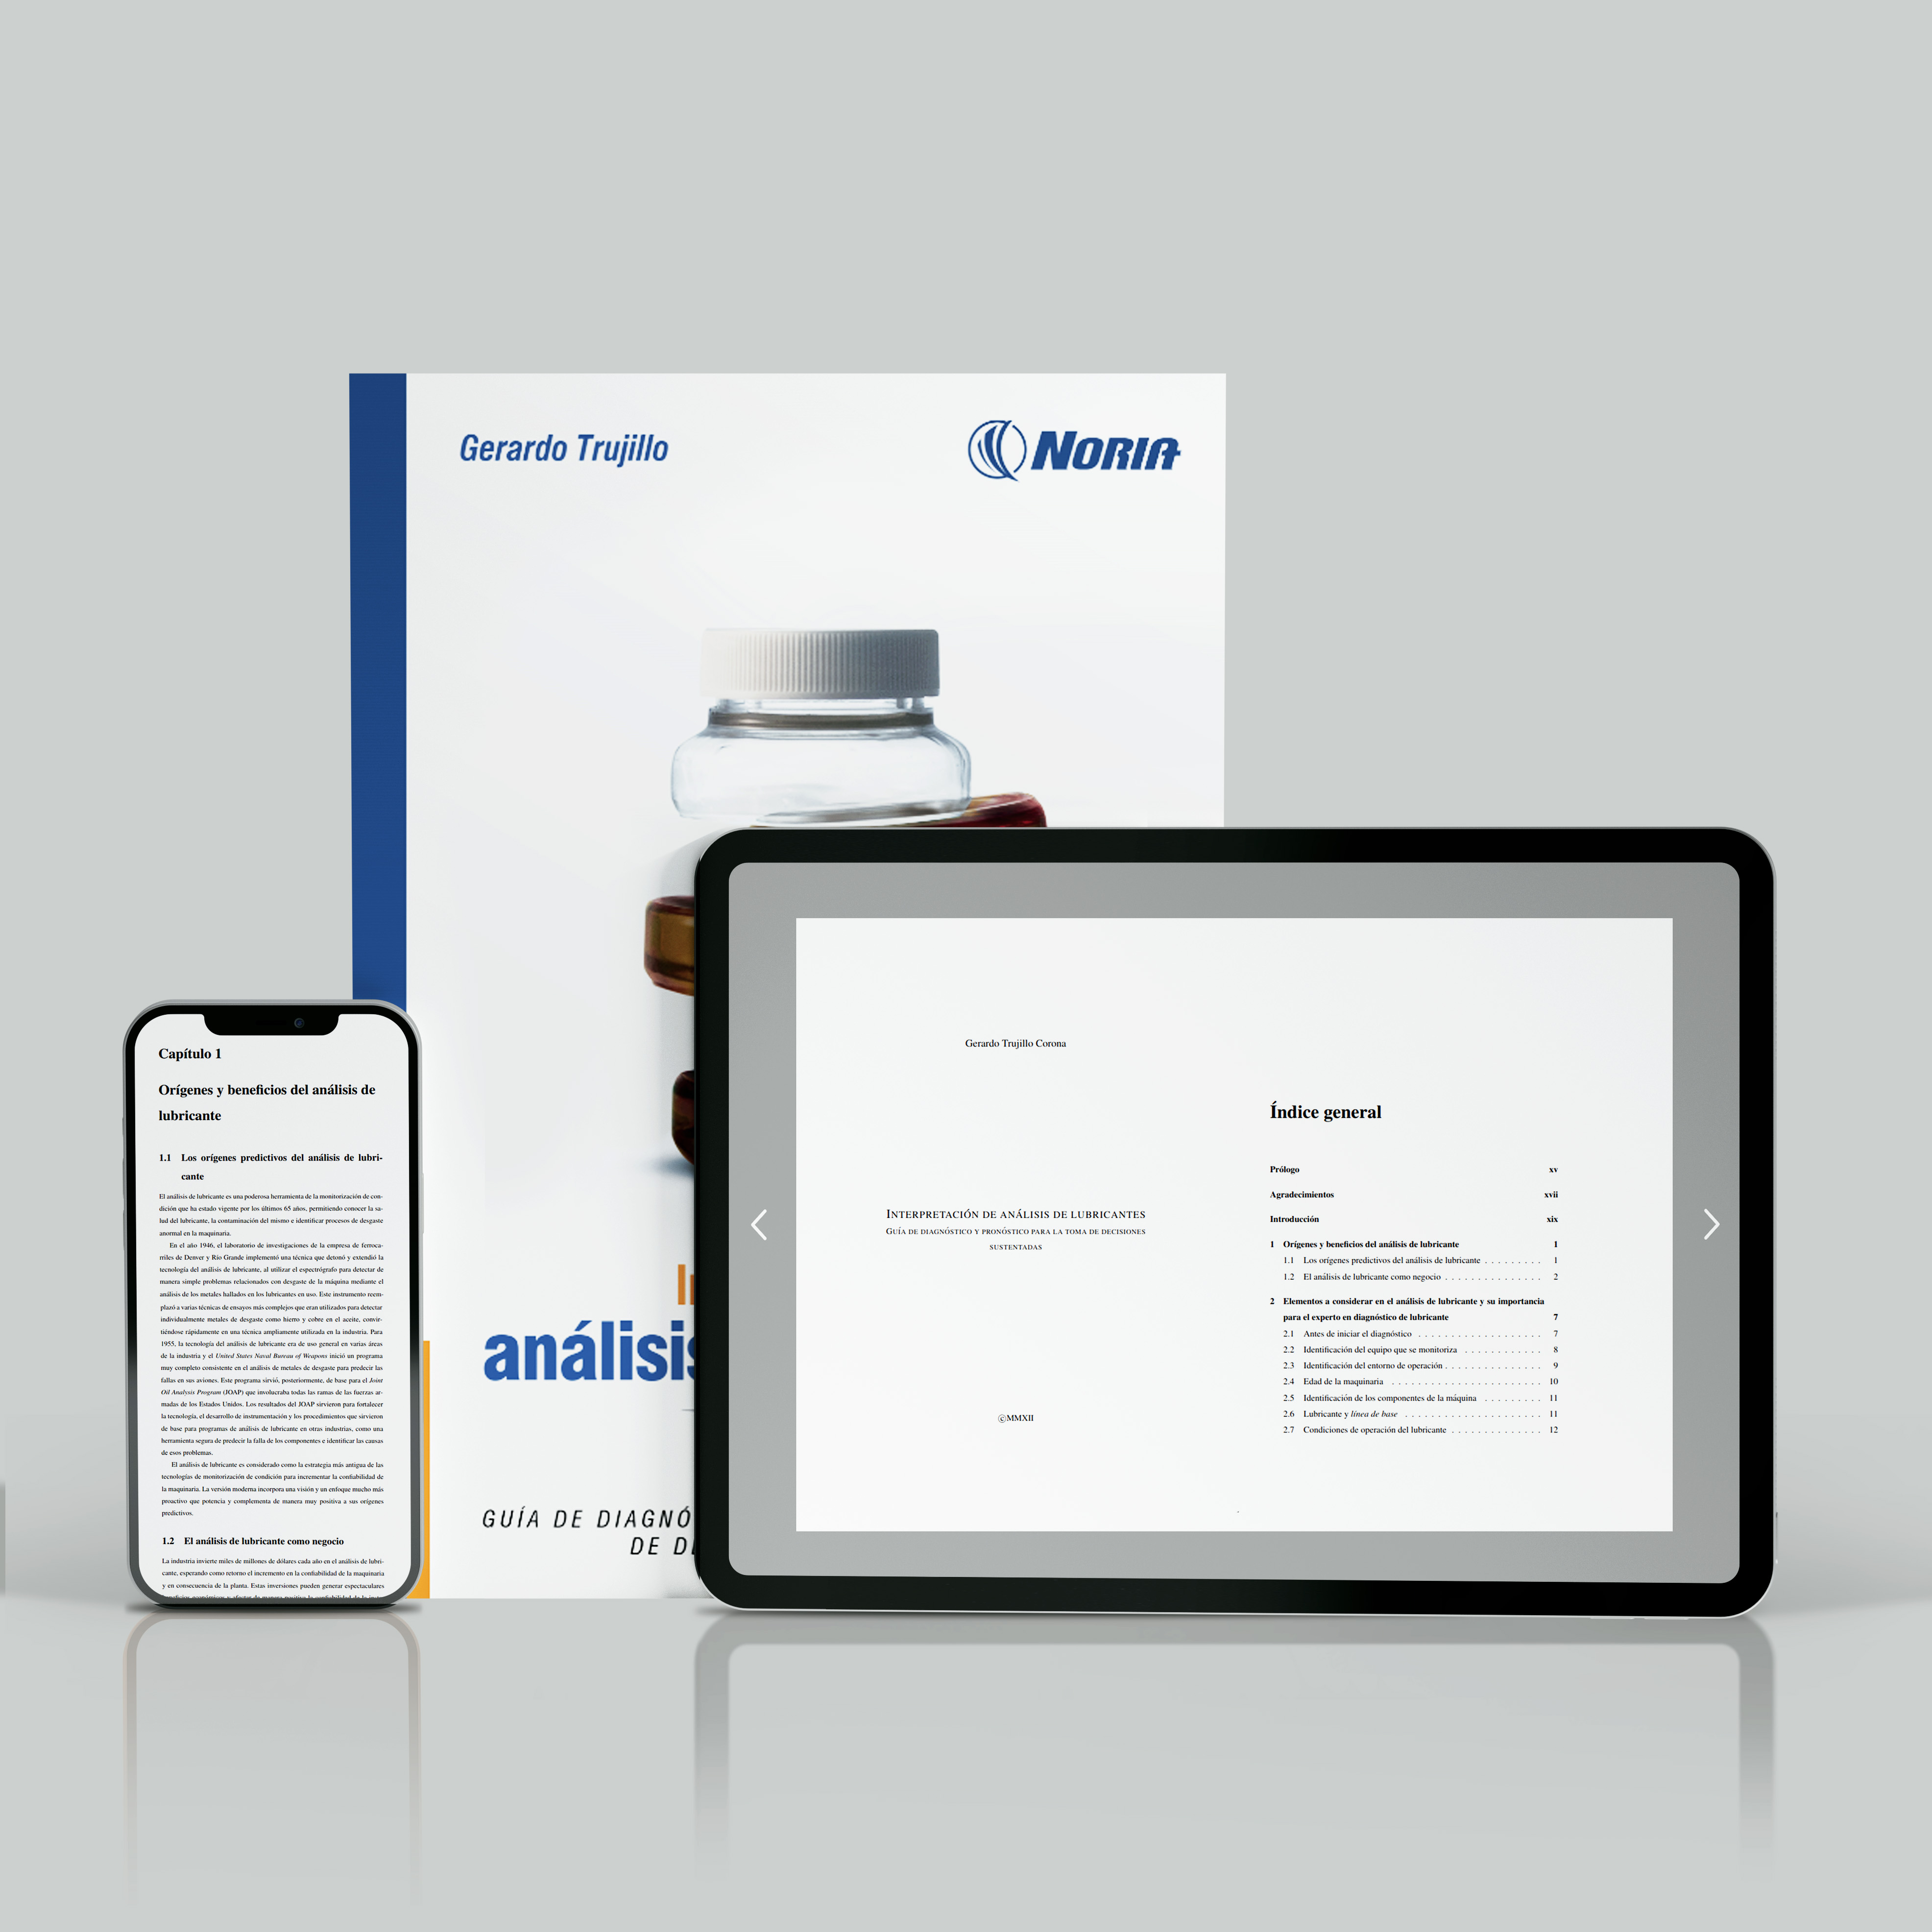 Libro digital - Interpretación de análisis de lubricantes: Guía de diagnóstico y pronóstico para la toma de decisiones sustentadas